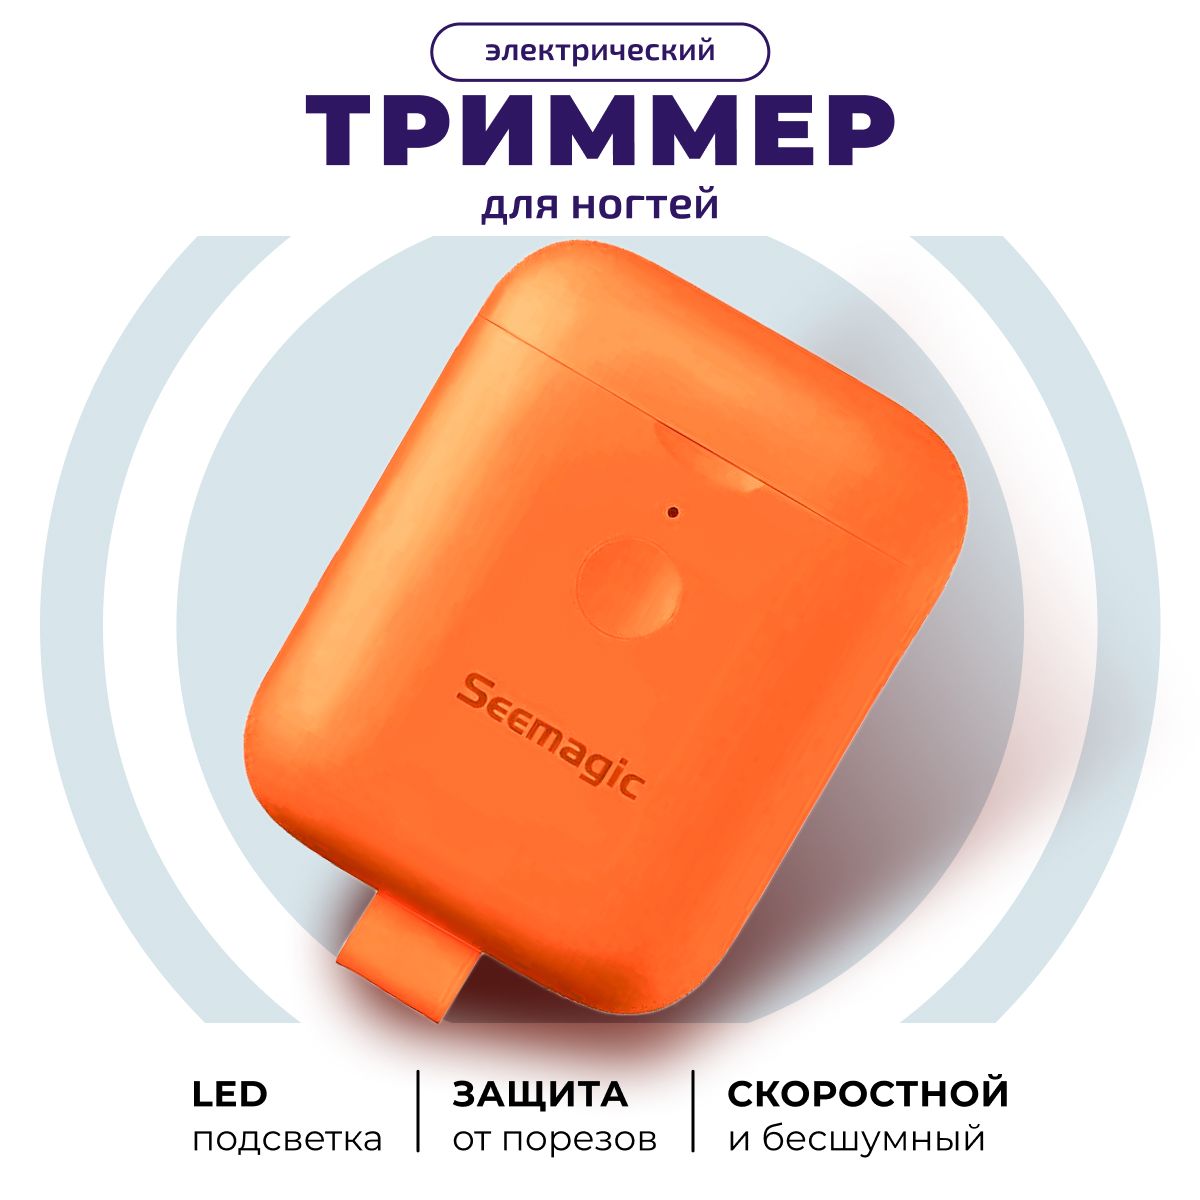 Электрический триммер для ногтей Seemagic mini электрический педикюрный инструмент xiaomi beheart m10 white